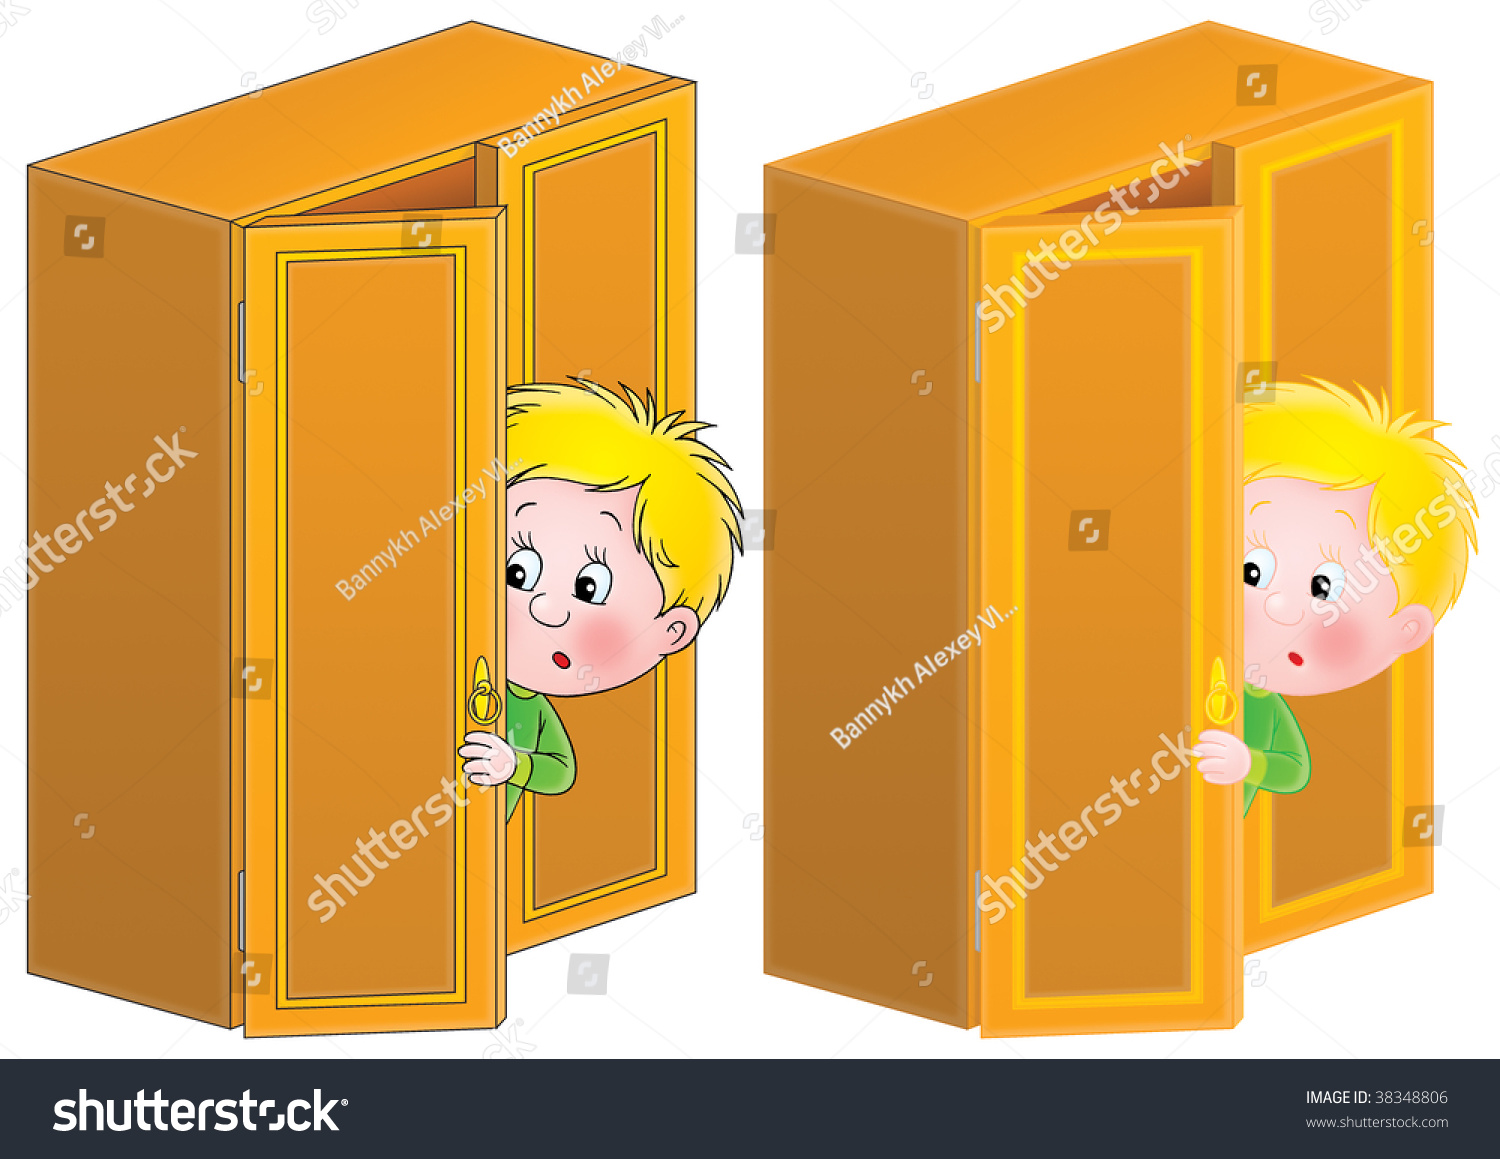 Шкафчик ребенка в детском саду рисованный